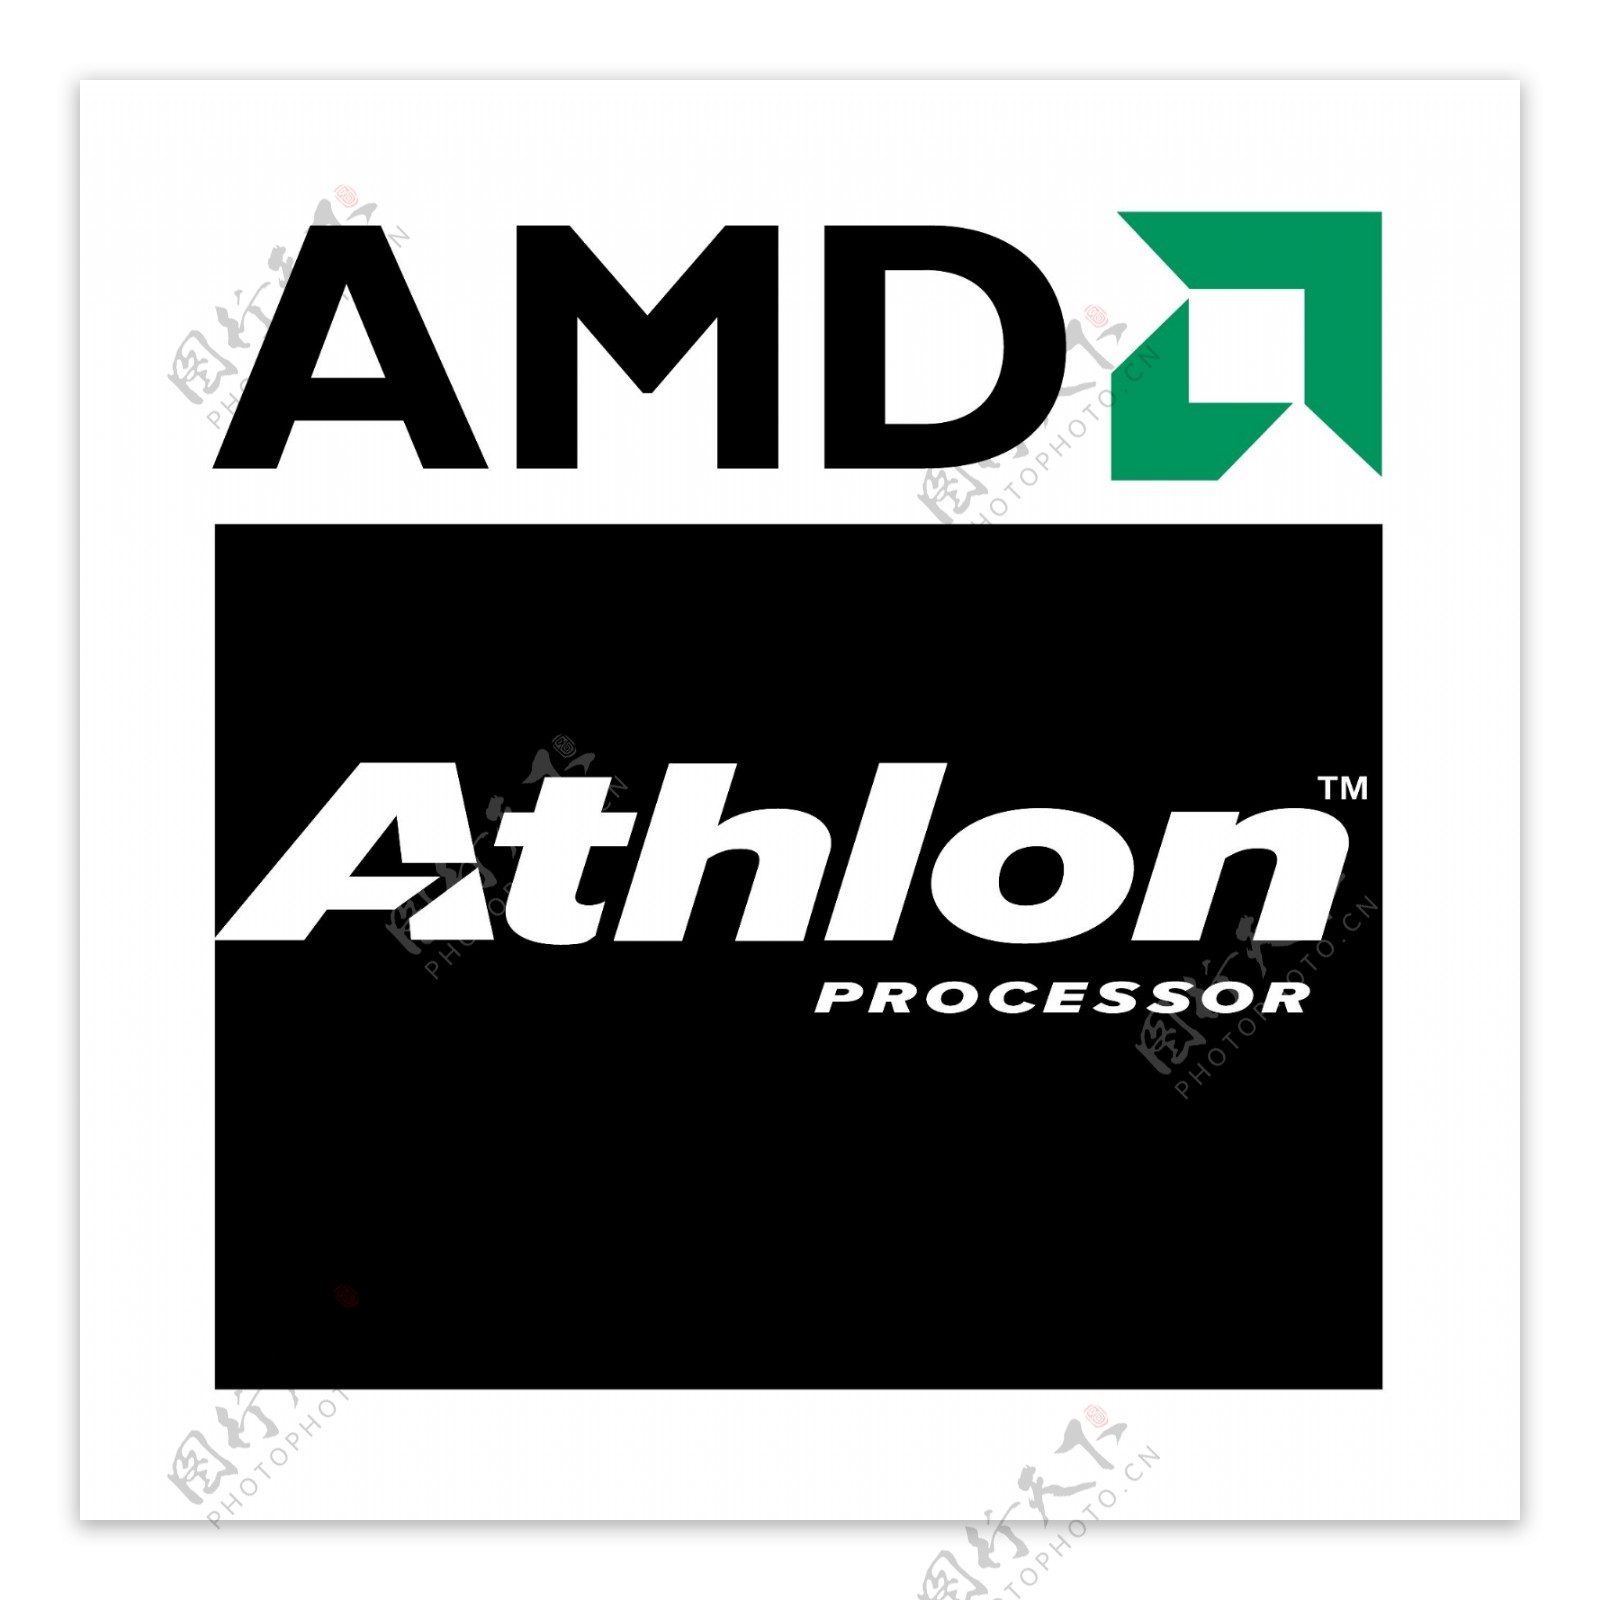 AMDAthlon处理器